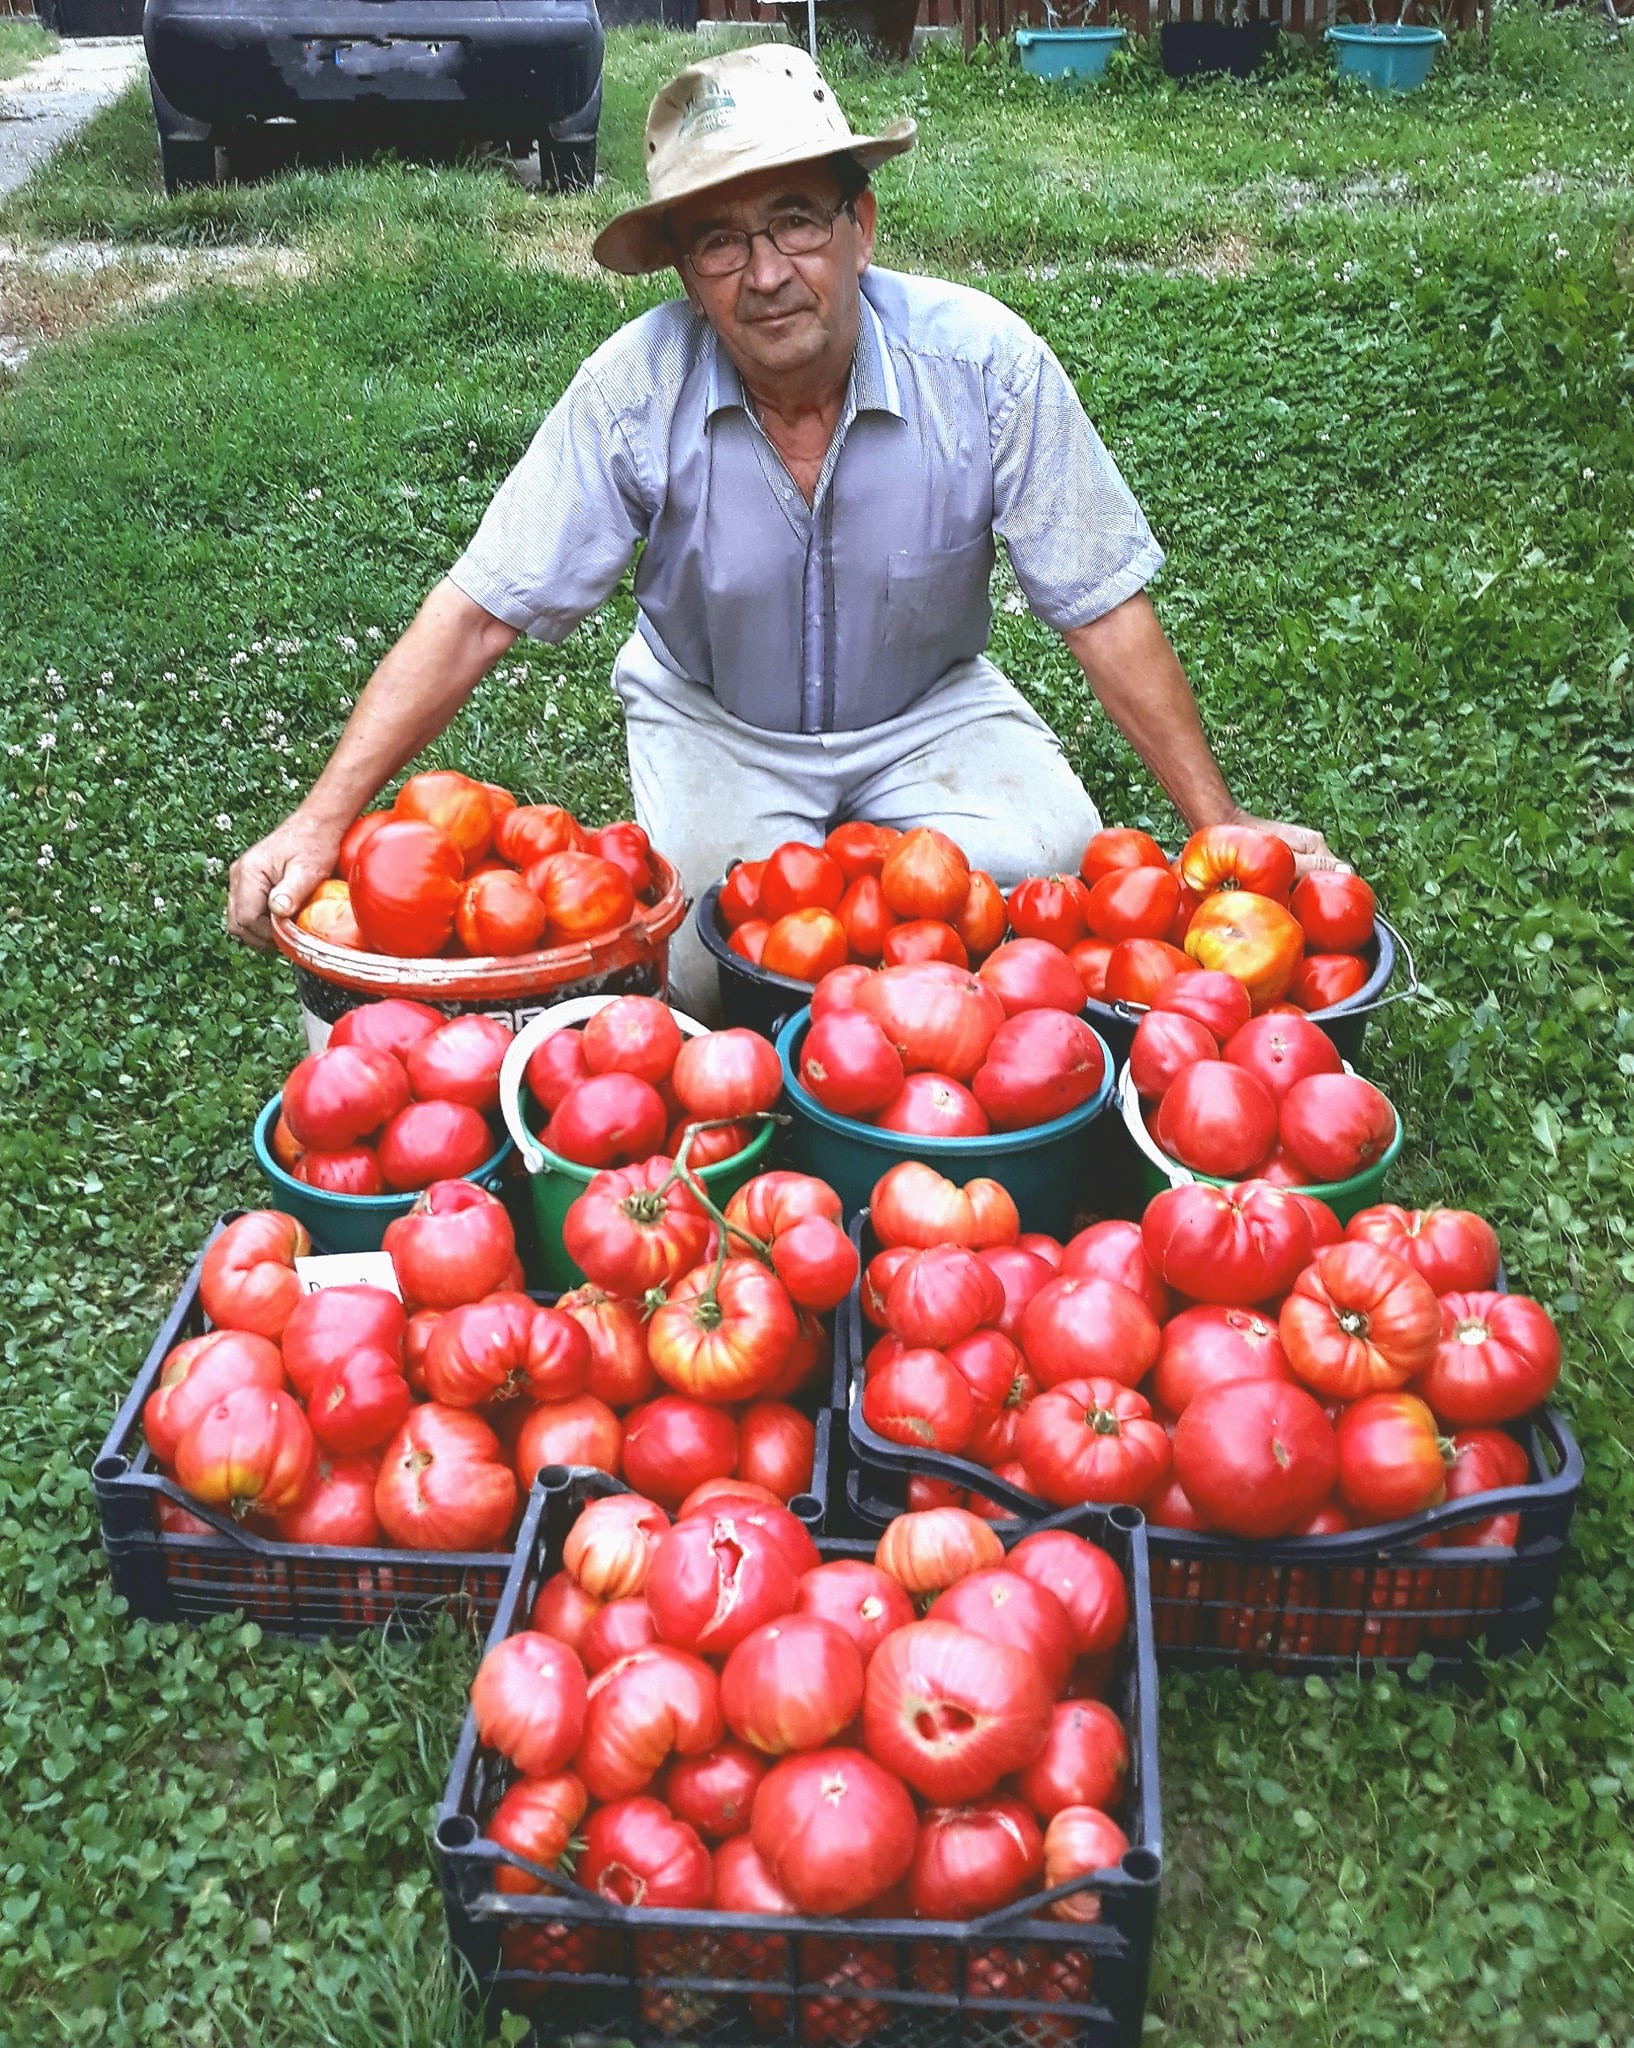 Vali Cucu, grădinarul care a salvat roșiile uriașe românești în urmă cu peste 30 ani, a murit